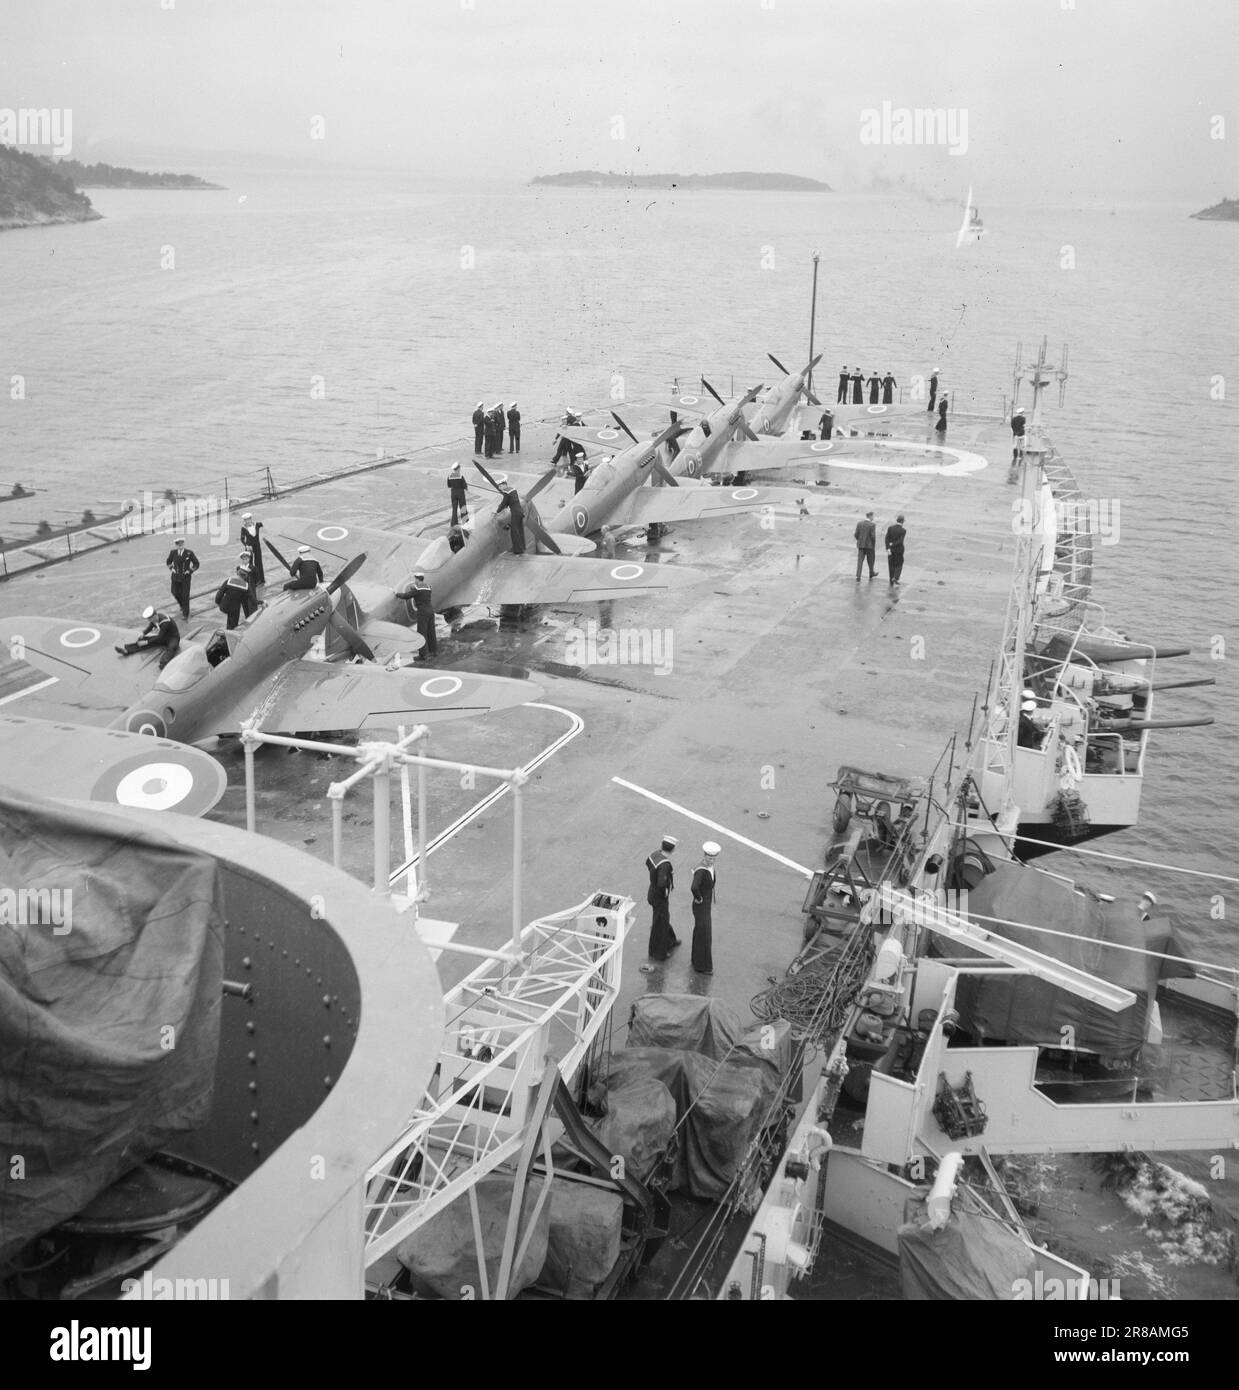 Derzeit 12-3-1947: Englische Fåtebösek Einheiten der britischen Heimatflotte besuchen Anfang Juni norwegische Küstenstädte. An Bord von "Vengeance" war der Oberbefehlshaber der britischen Marine, erster Seelord, Admiral Cunningham. Dieser erste offizielle britische Flottenbesuch nach dem Krieg fand auf norwegische Initiative statt, als Salut und dank der britischen Marine. Der majestätische Koloss „Rache“ auf dem Weg zum Oslofjord. Die Crew ist dabei, die Flugzeuge auf dem Startdeck zu polieren und das Boot für die Ankunft in Oslo gut aussehen zu lassen. An den meisten Orten wird die Öffentlichkeit Zugang zum W haben Stockfoto